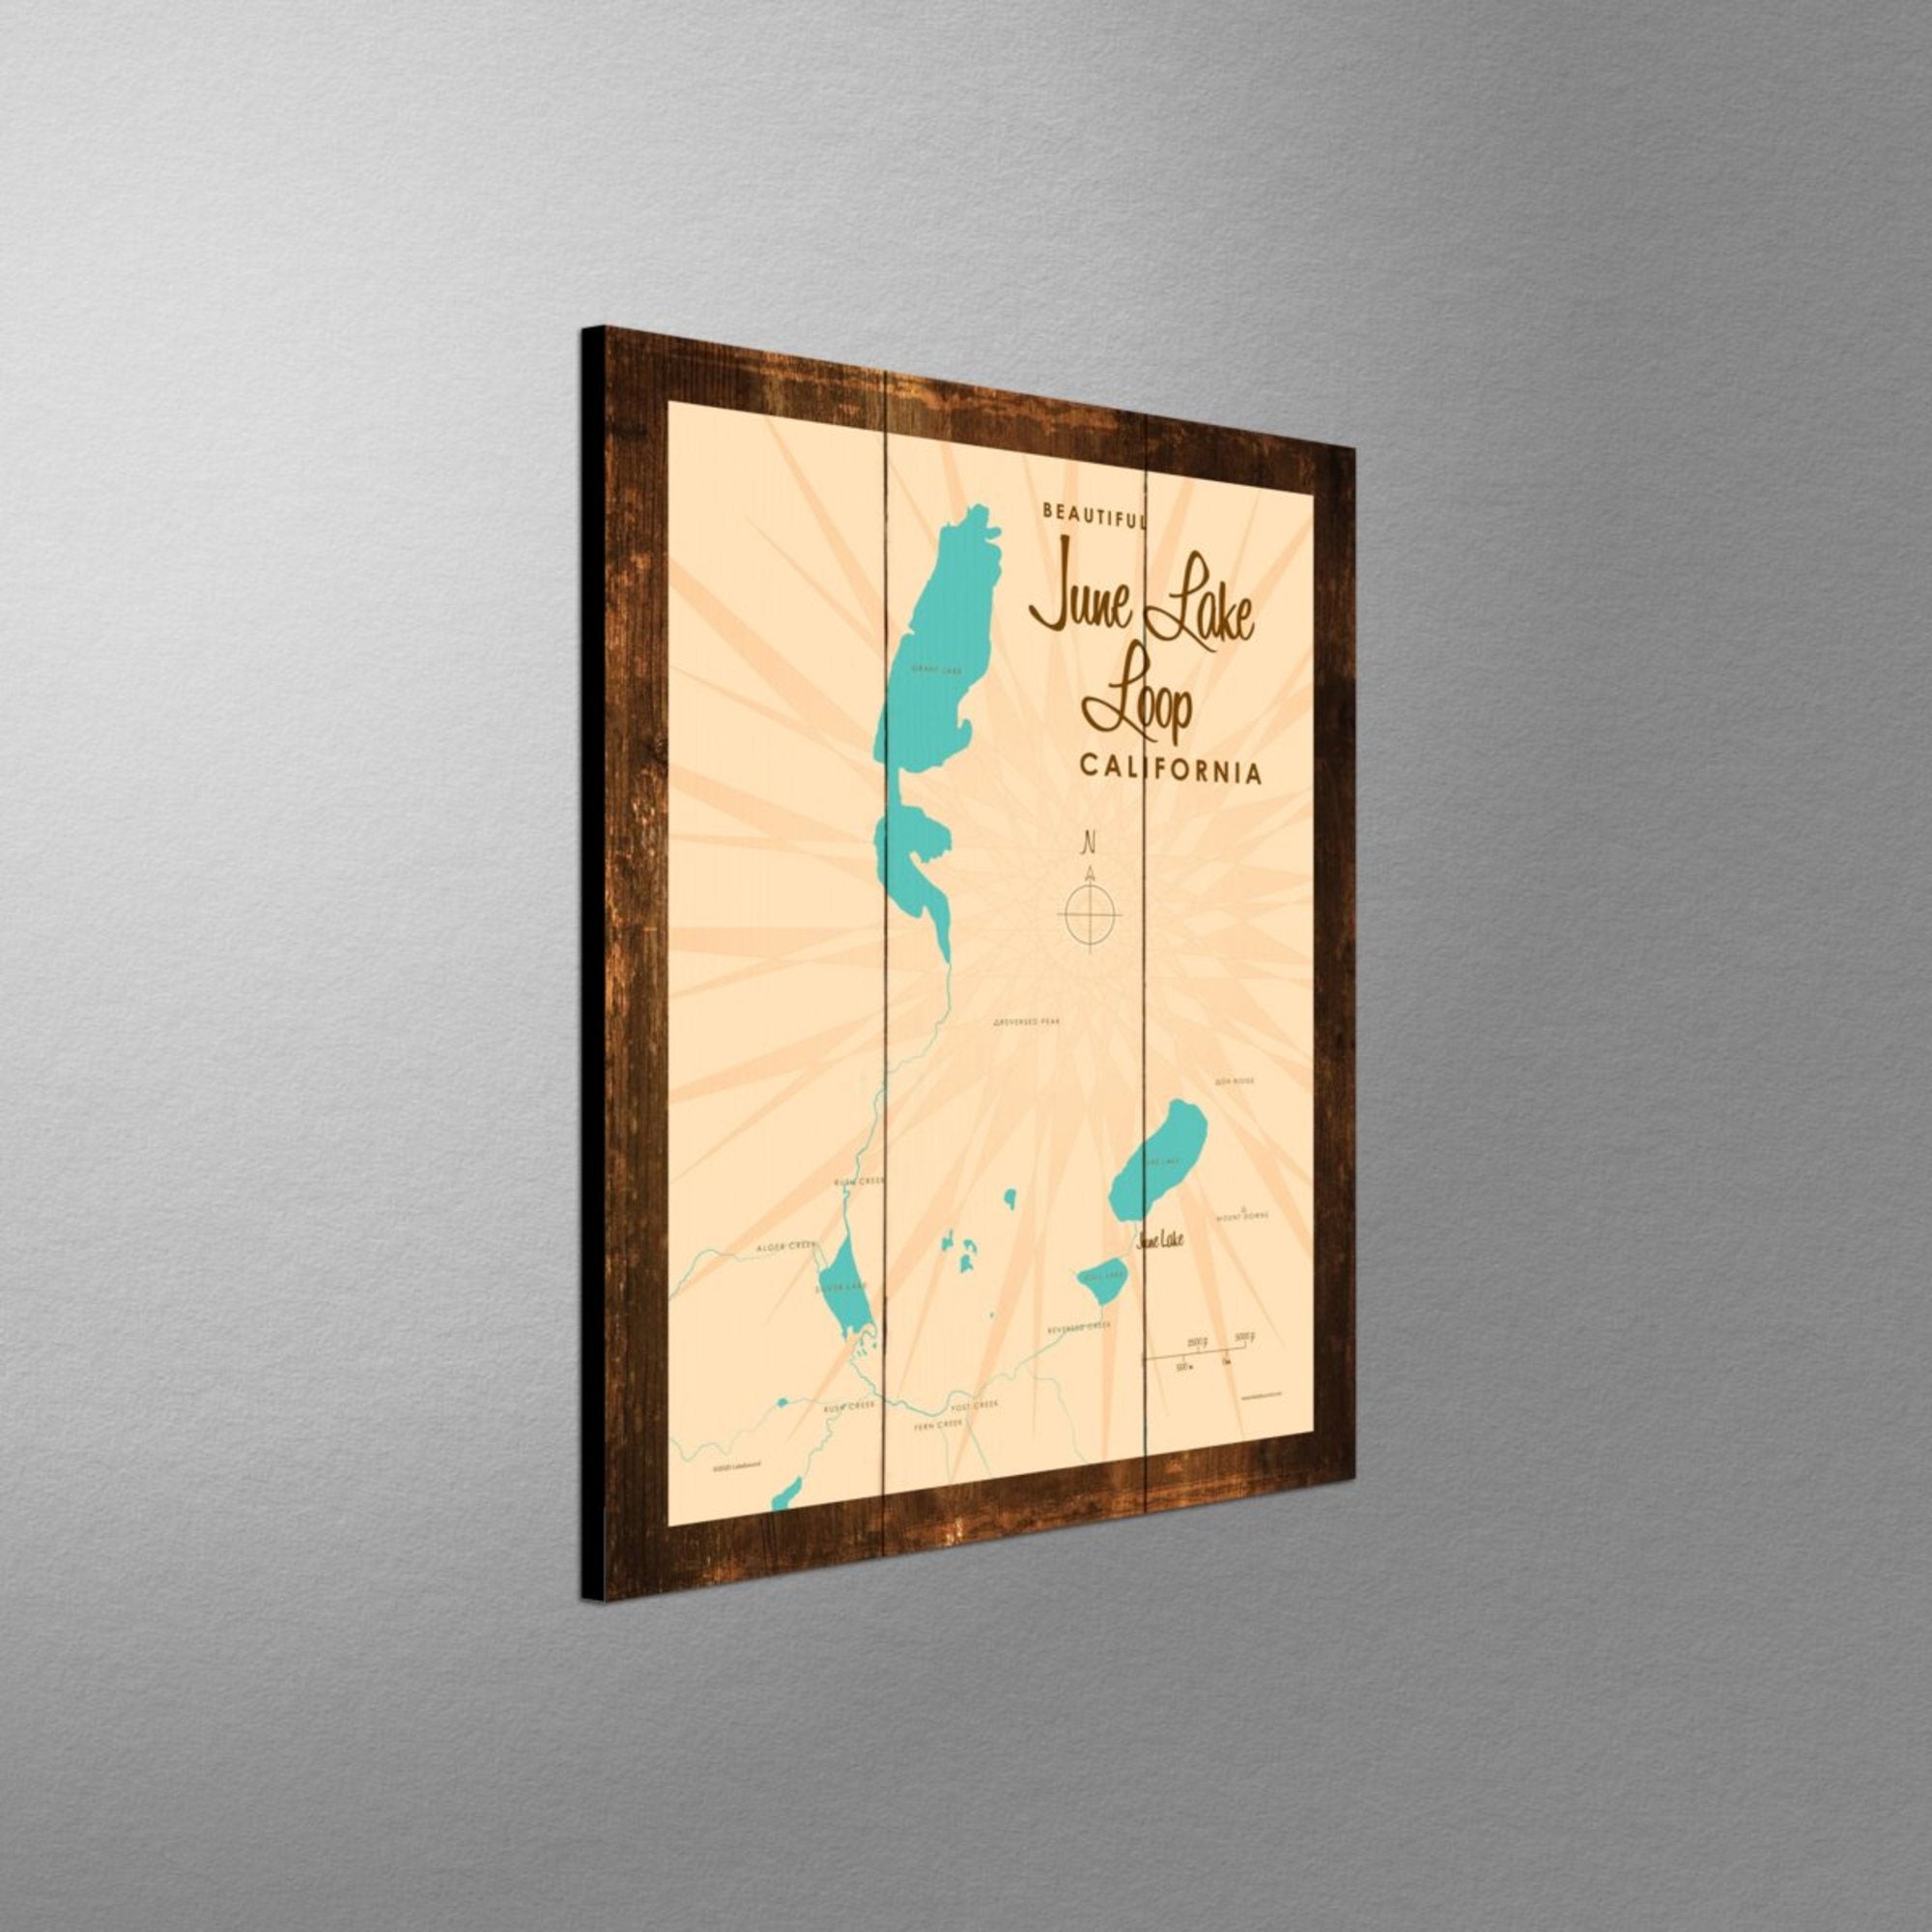 June Lake Loop California, Rustic Wood Sign Map Art